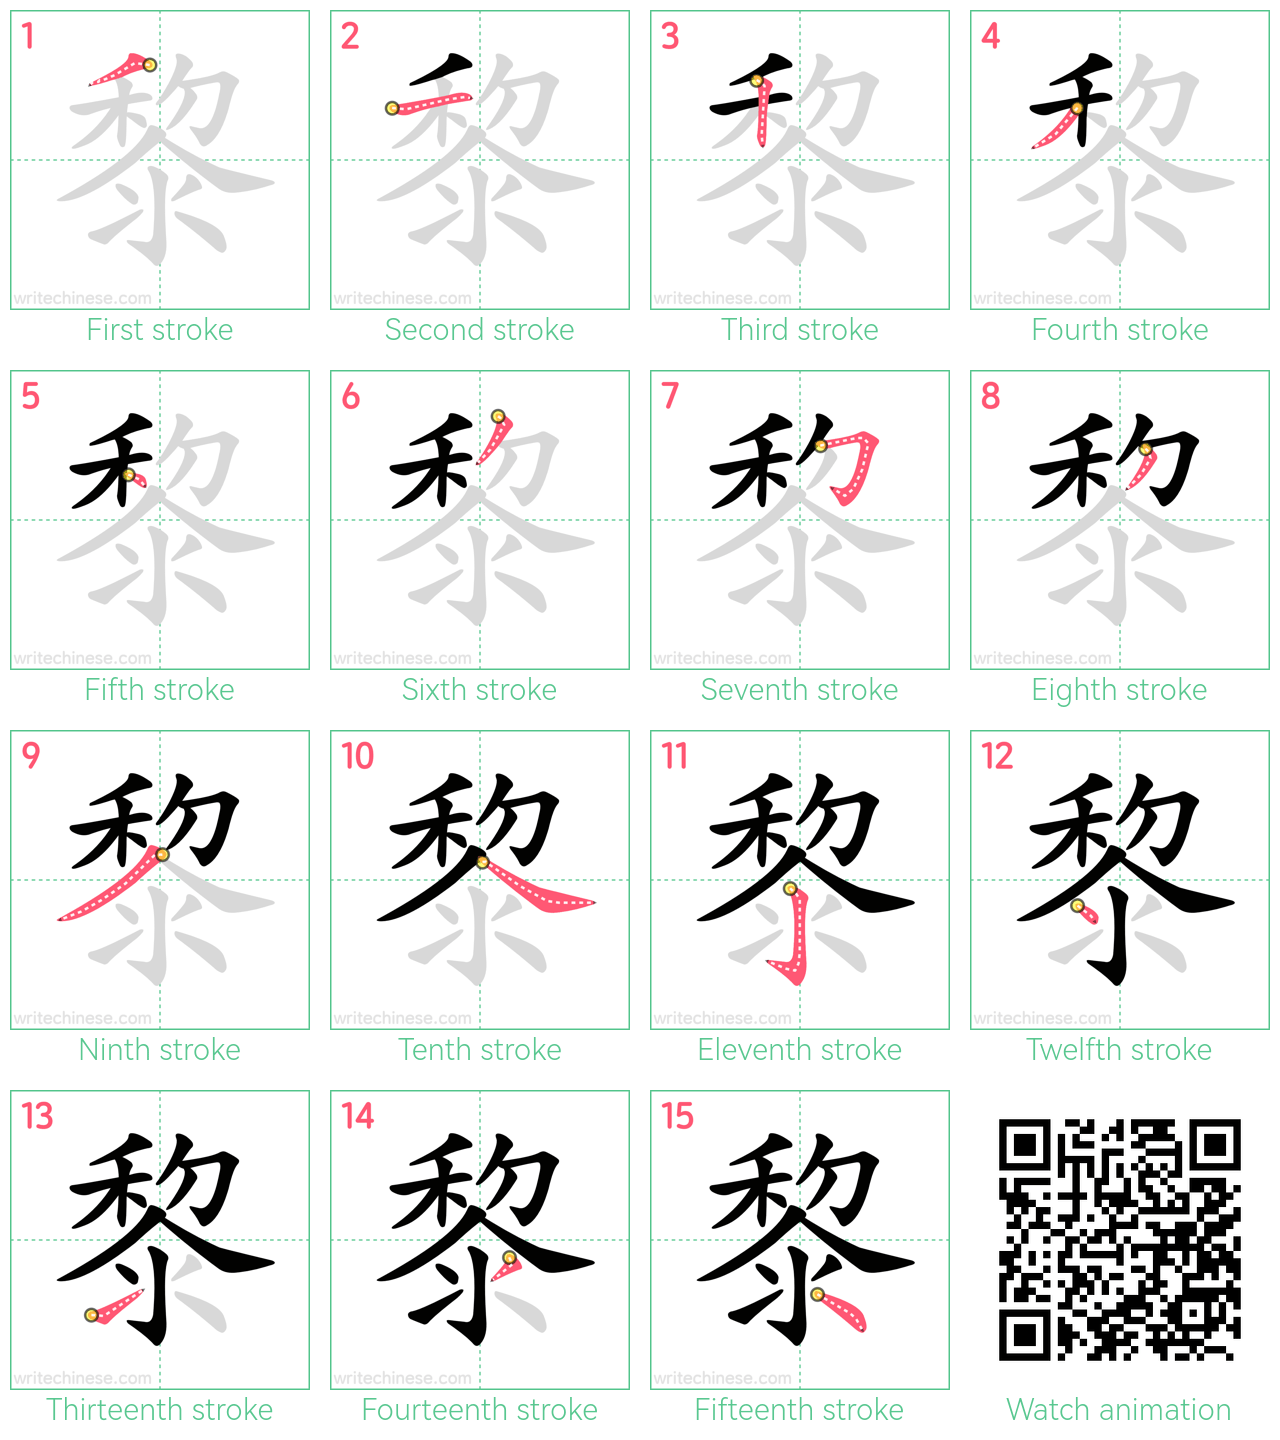 黎 step-by-step stroke order diagrams